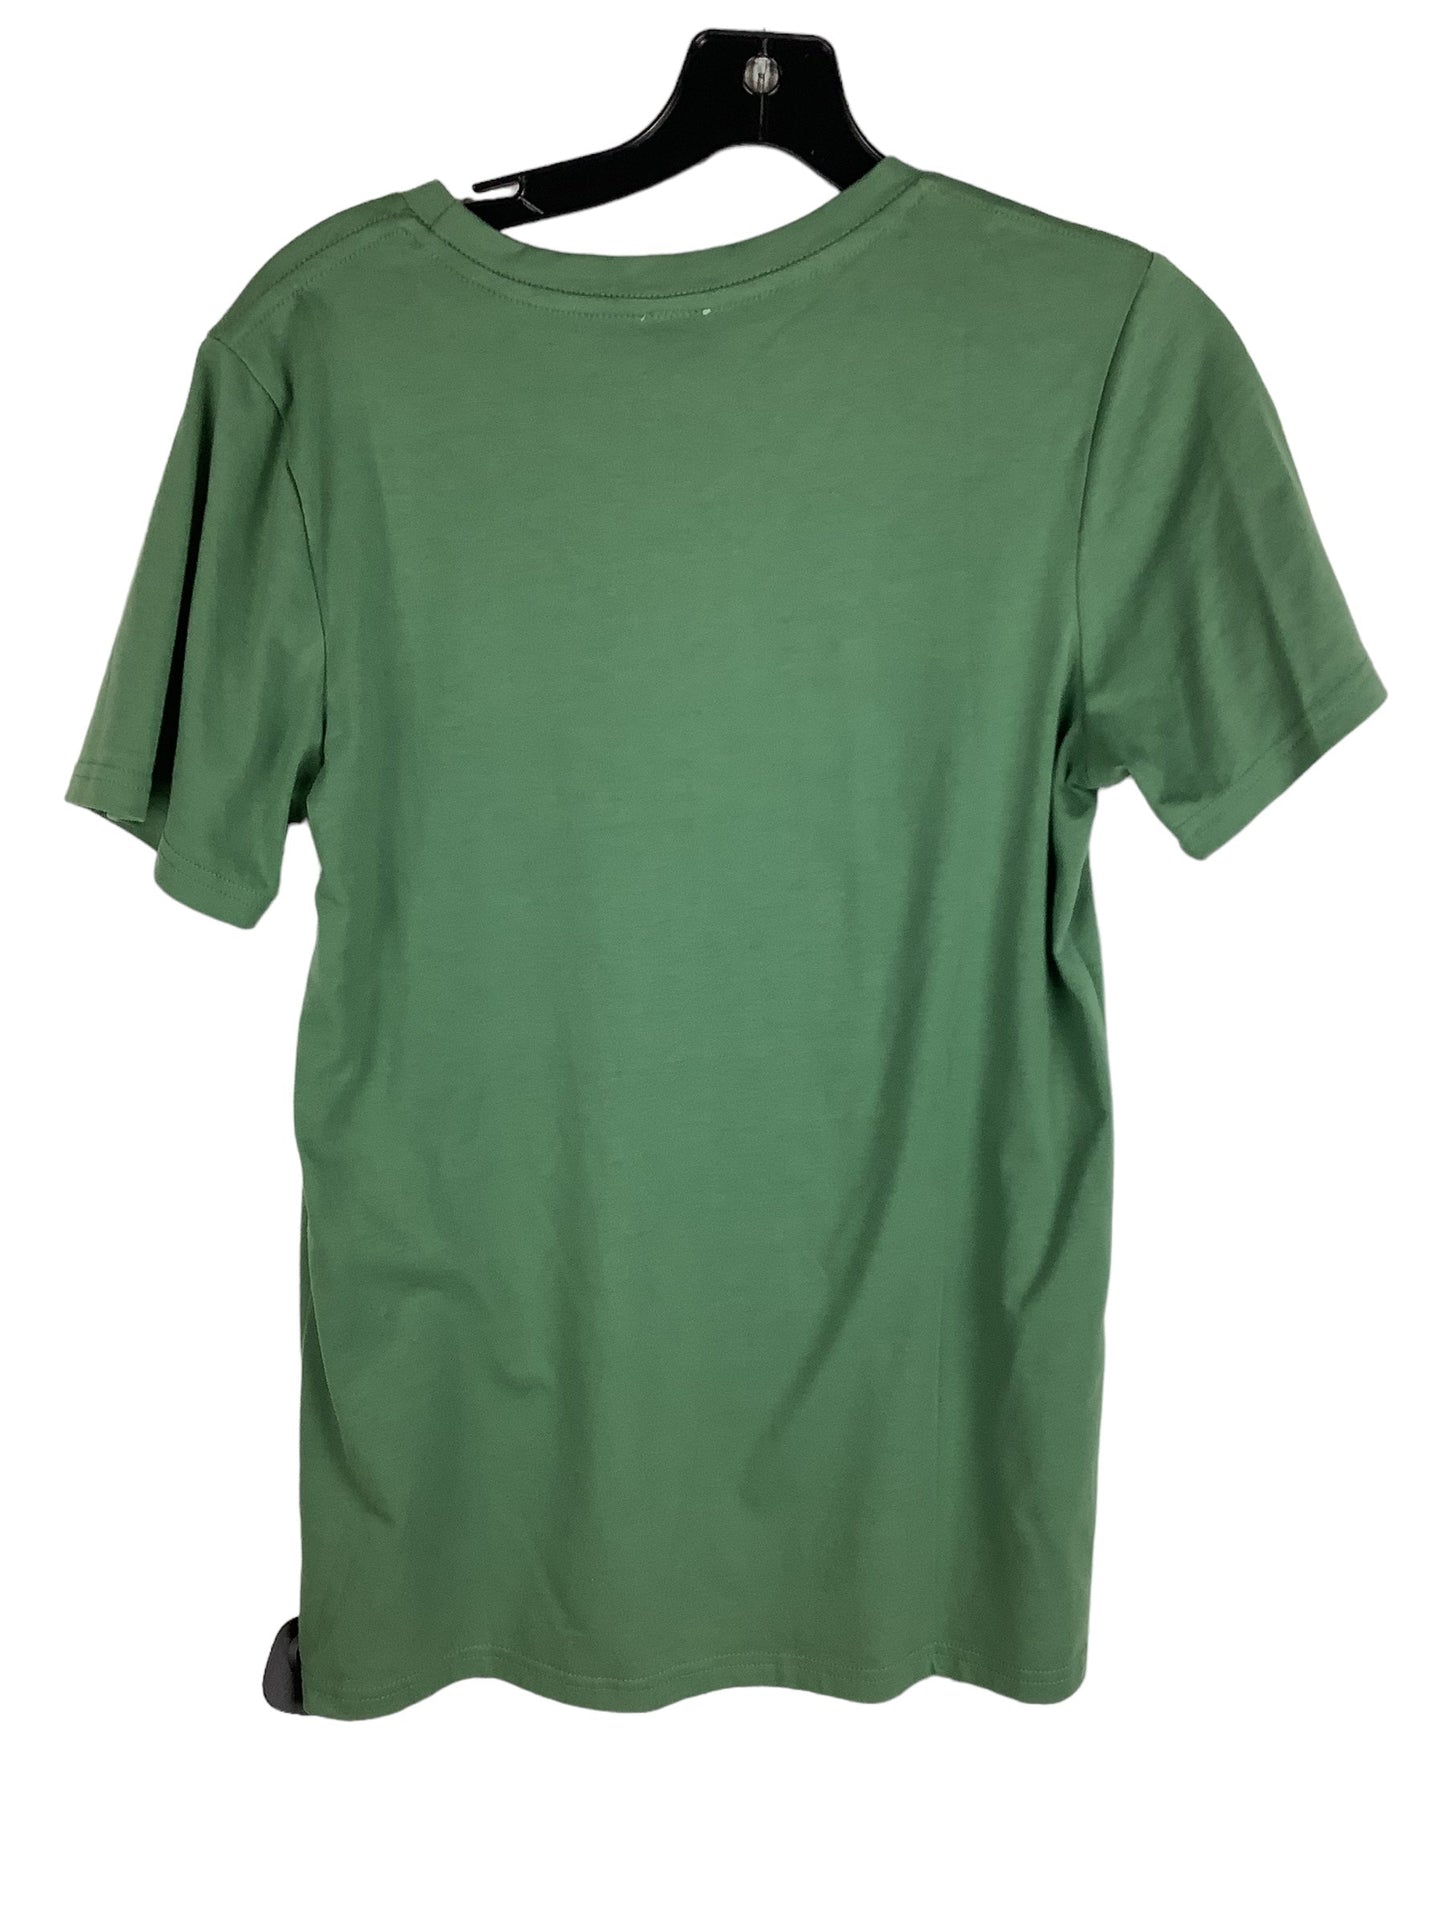 Green Top Short Sleeve Clothes Mentor